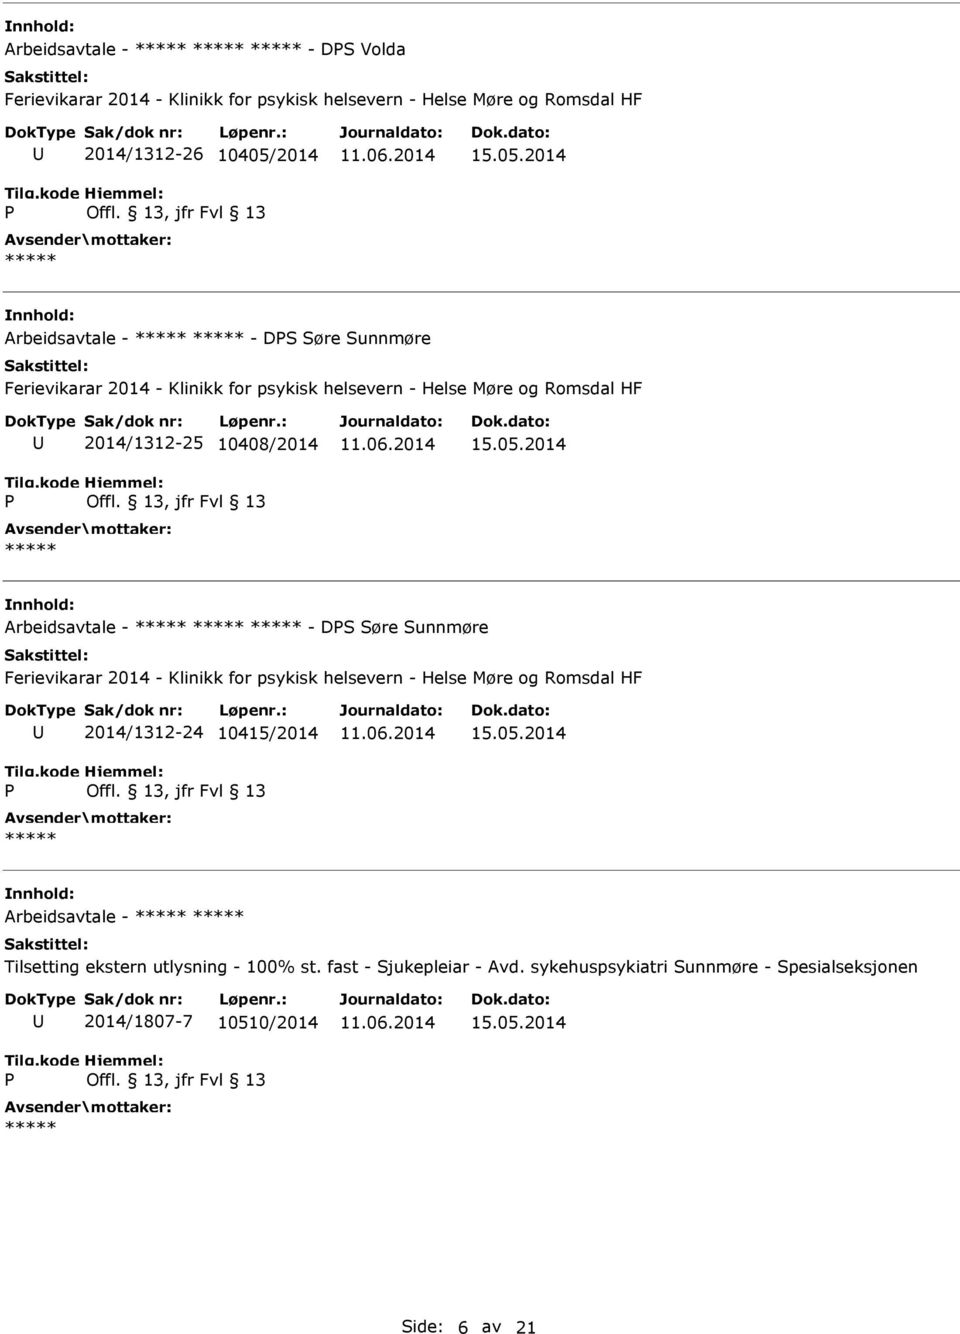 2014 Arbeidsavtale - - DS Søre Sunnmøre Ferievikarar 2014 - Klinikk for psykisk helsevern - Helse Møre og Romsdal HF 2014/1312-25 10408/2014